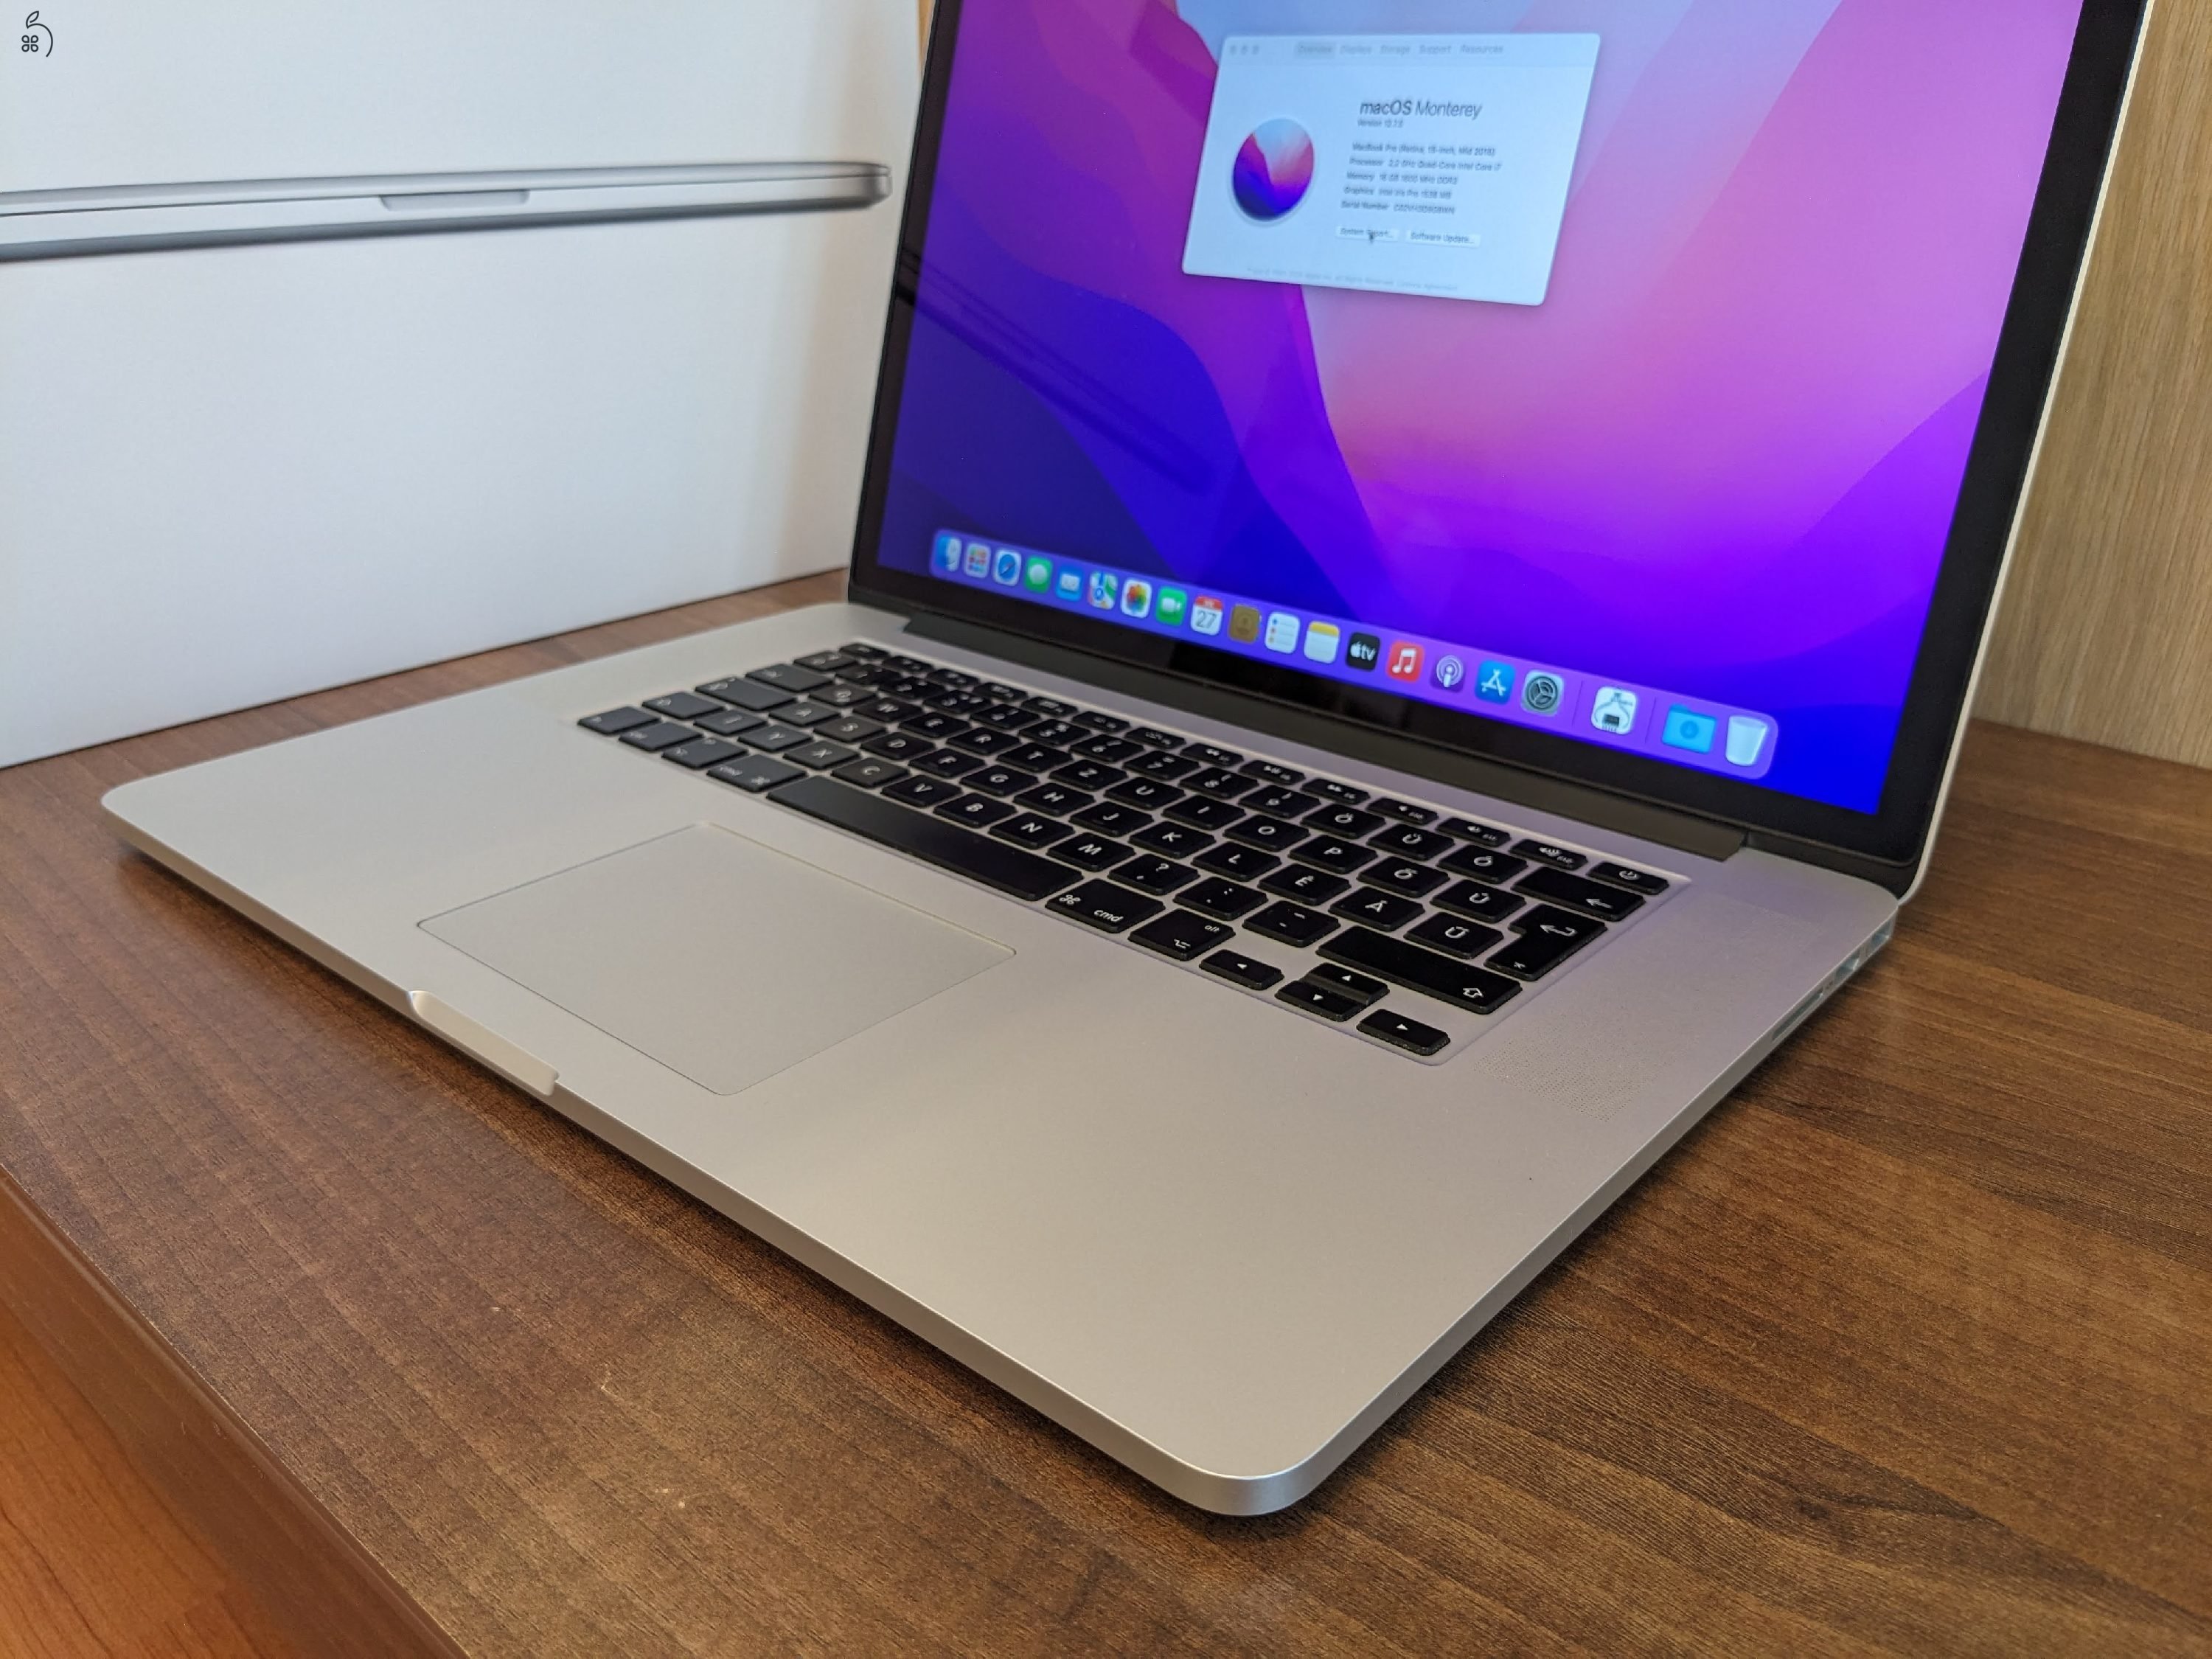 MacBook Pro (Retina, 15-inch, Mid 2015) 16GB RAM, 256GB SSD